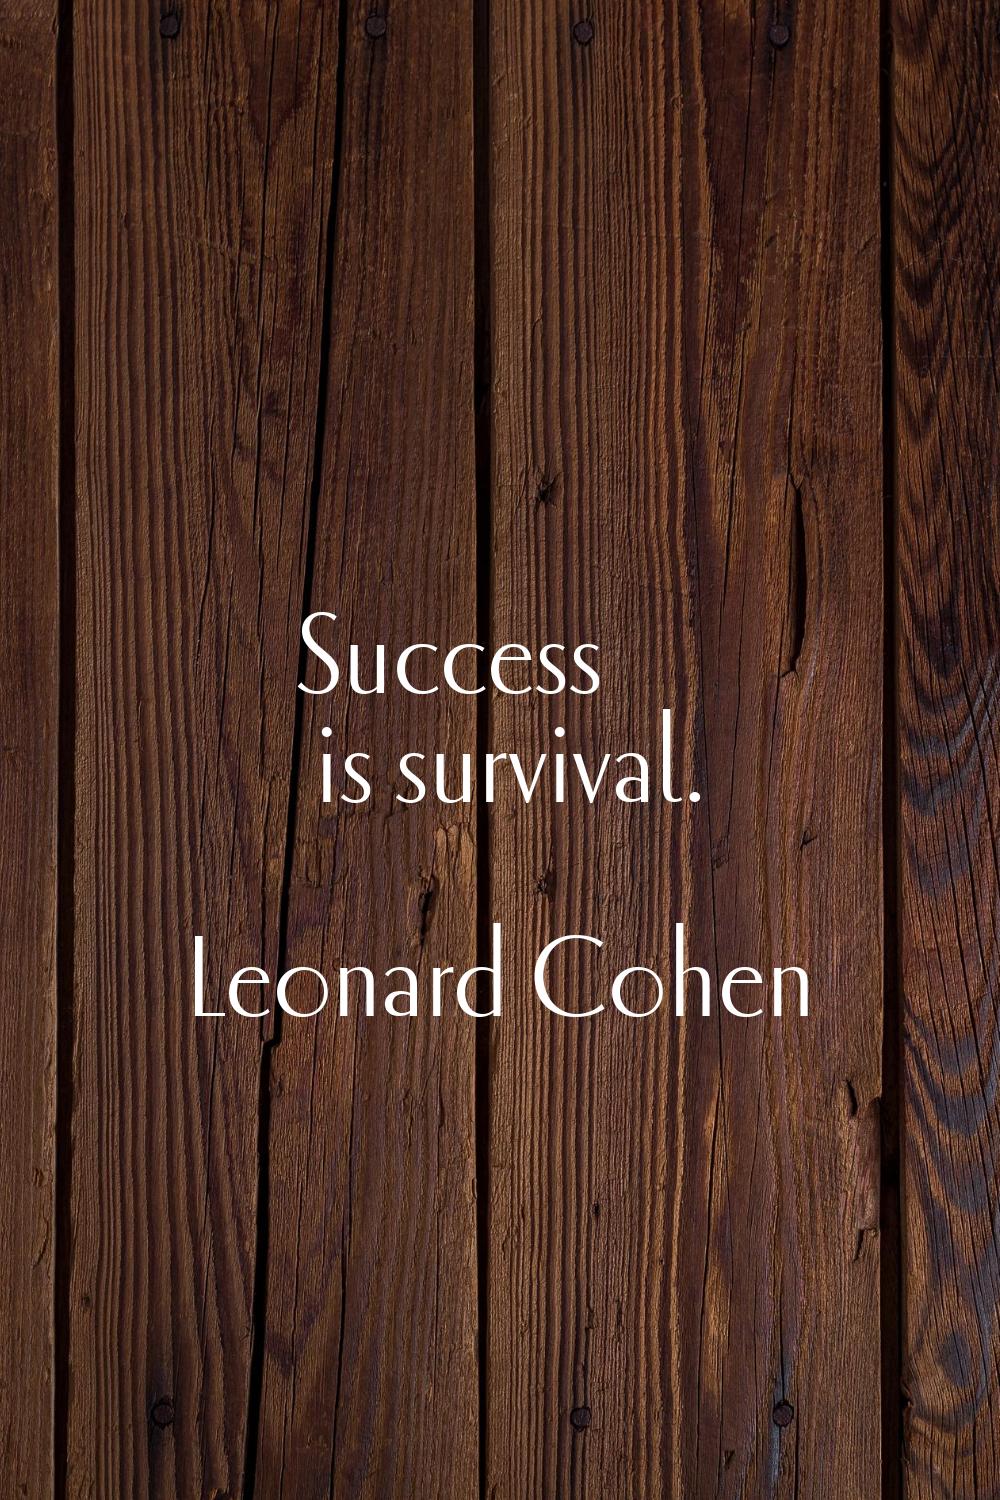 Success is survival.